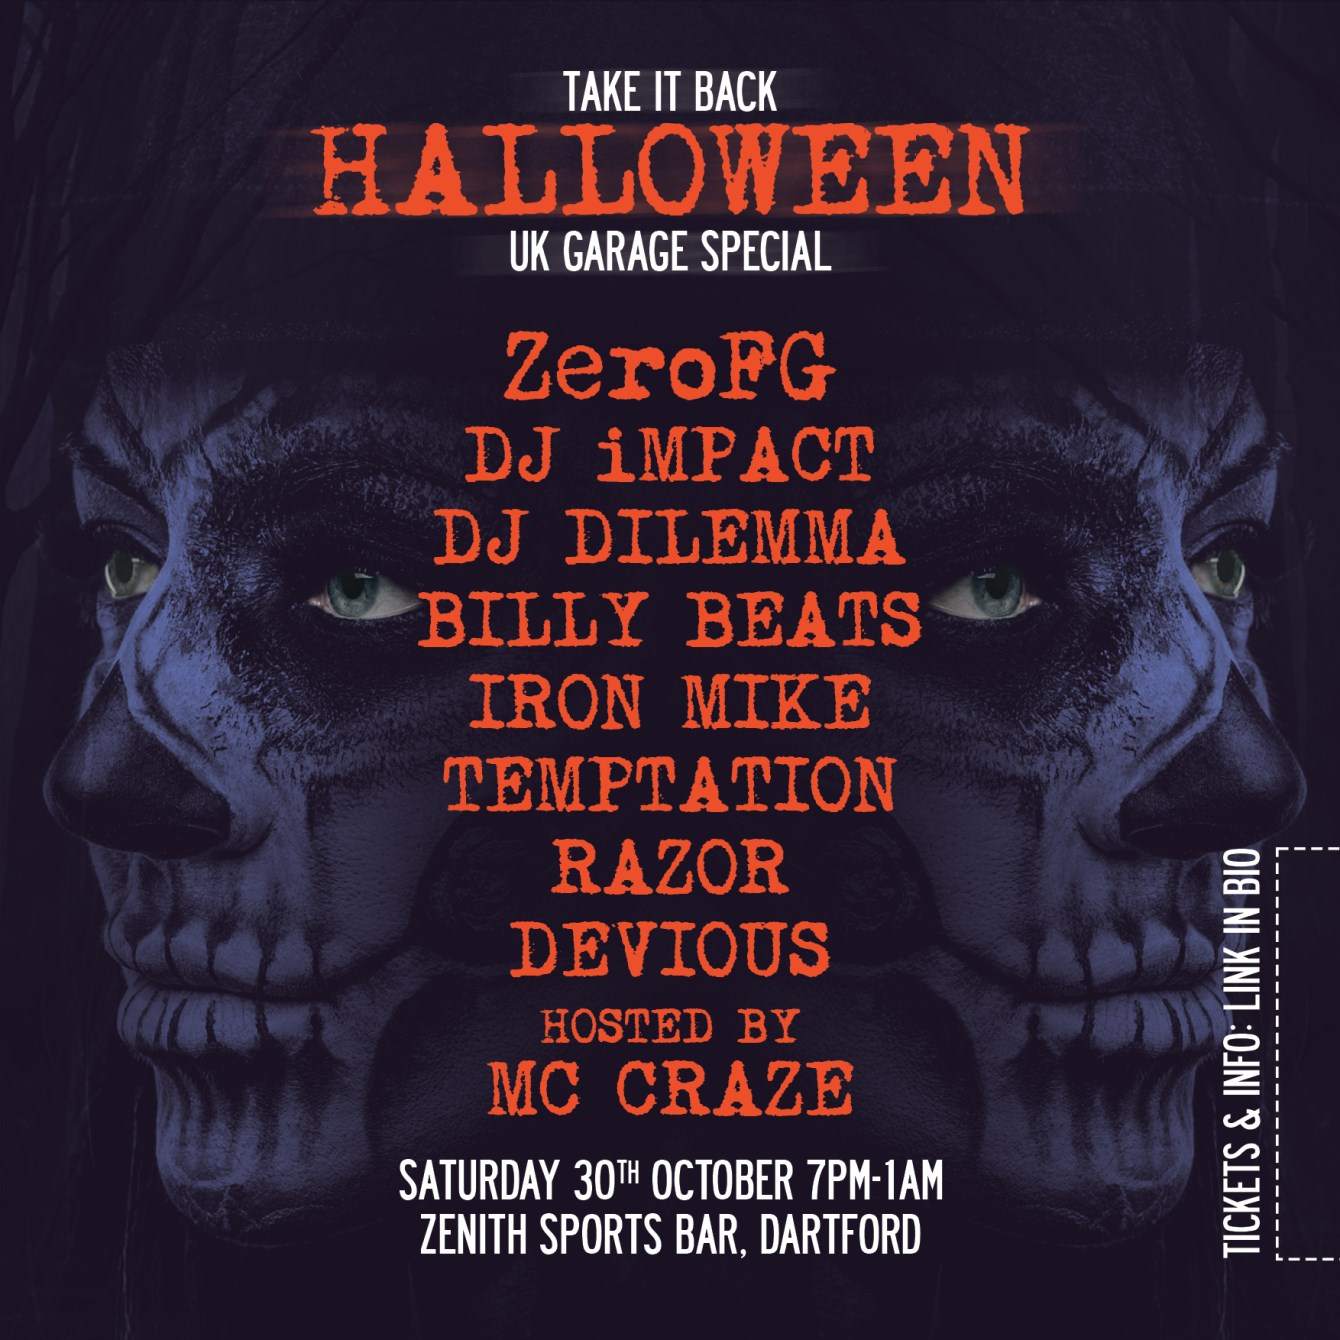 Take It Back Halloween UK Garage Special - Página trasera